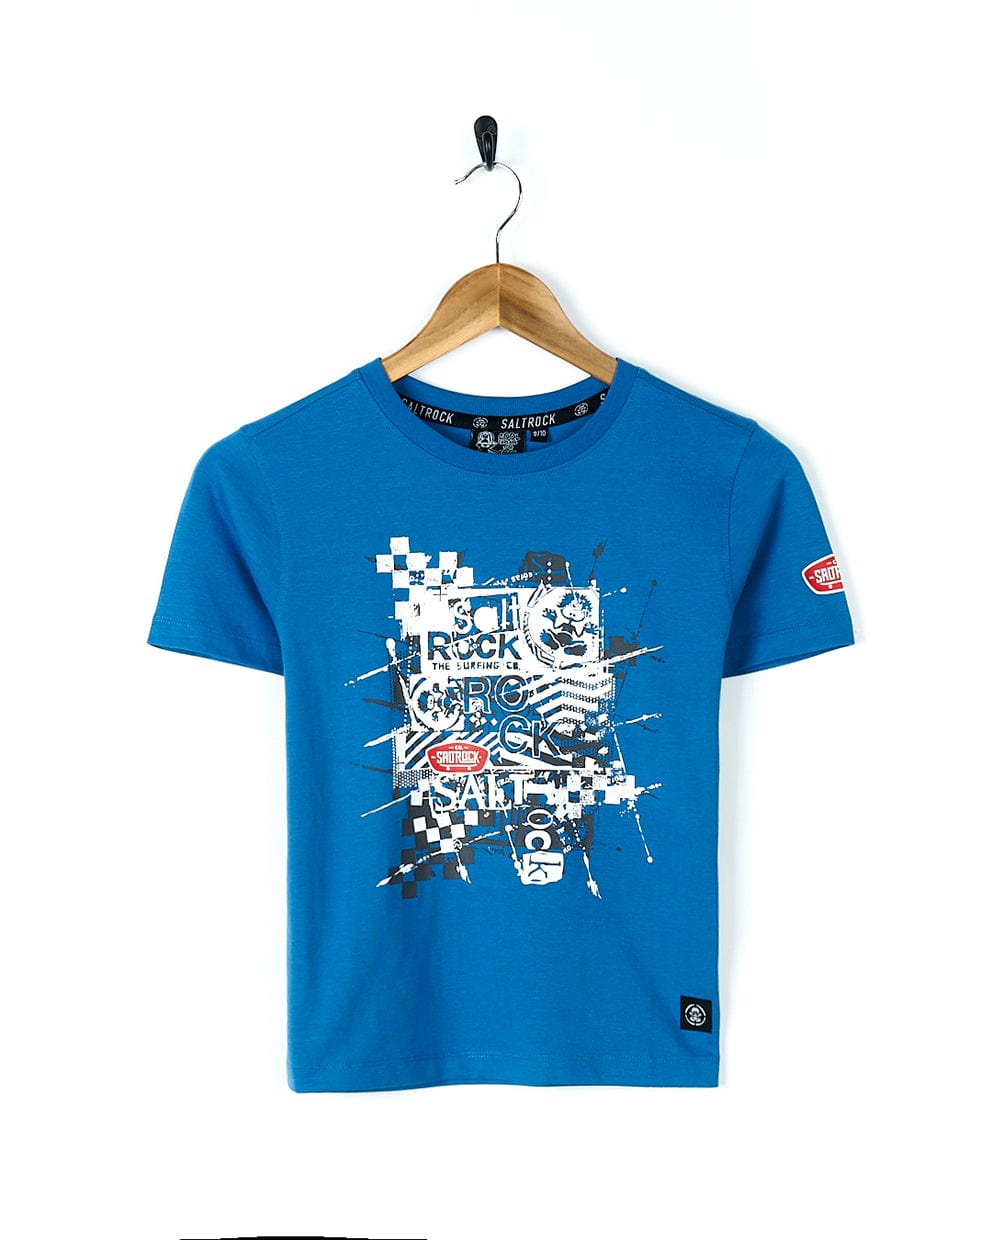 A Warp Mashup - Kids Short Sleeve T-Shirt - Blue featuring Saltrock branding.